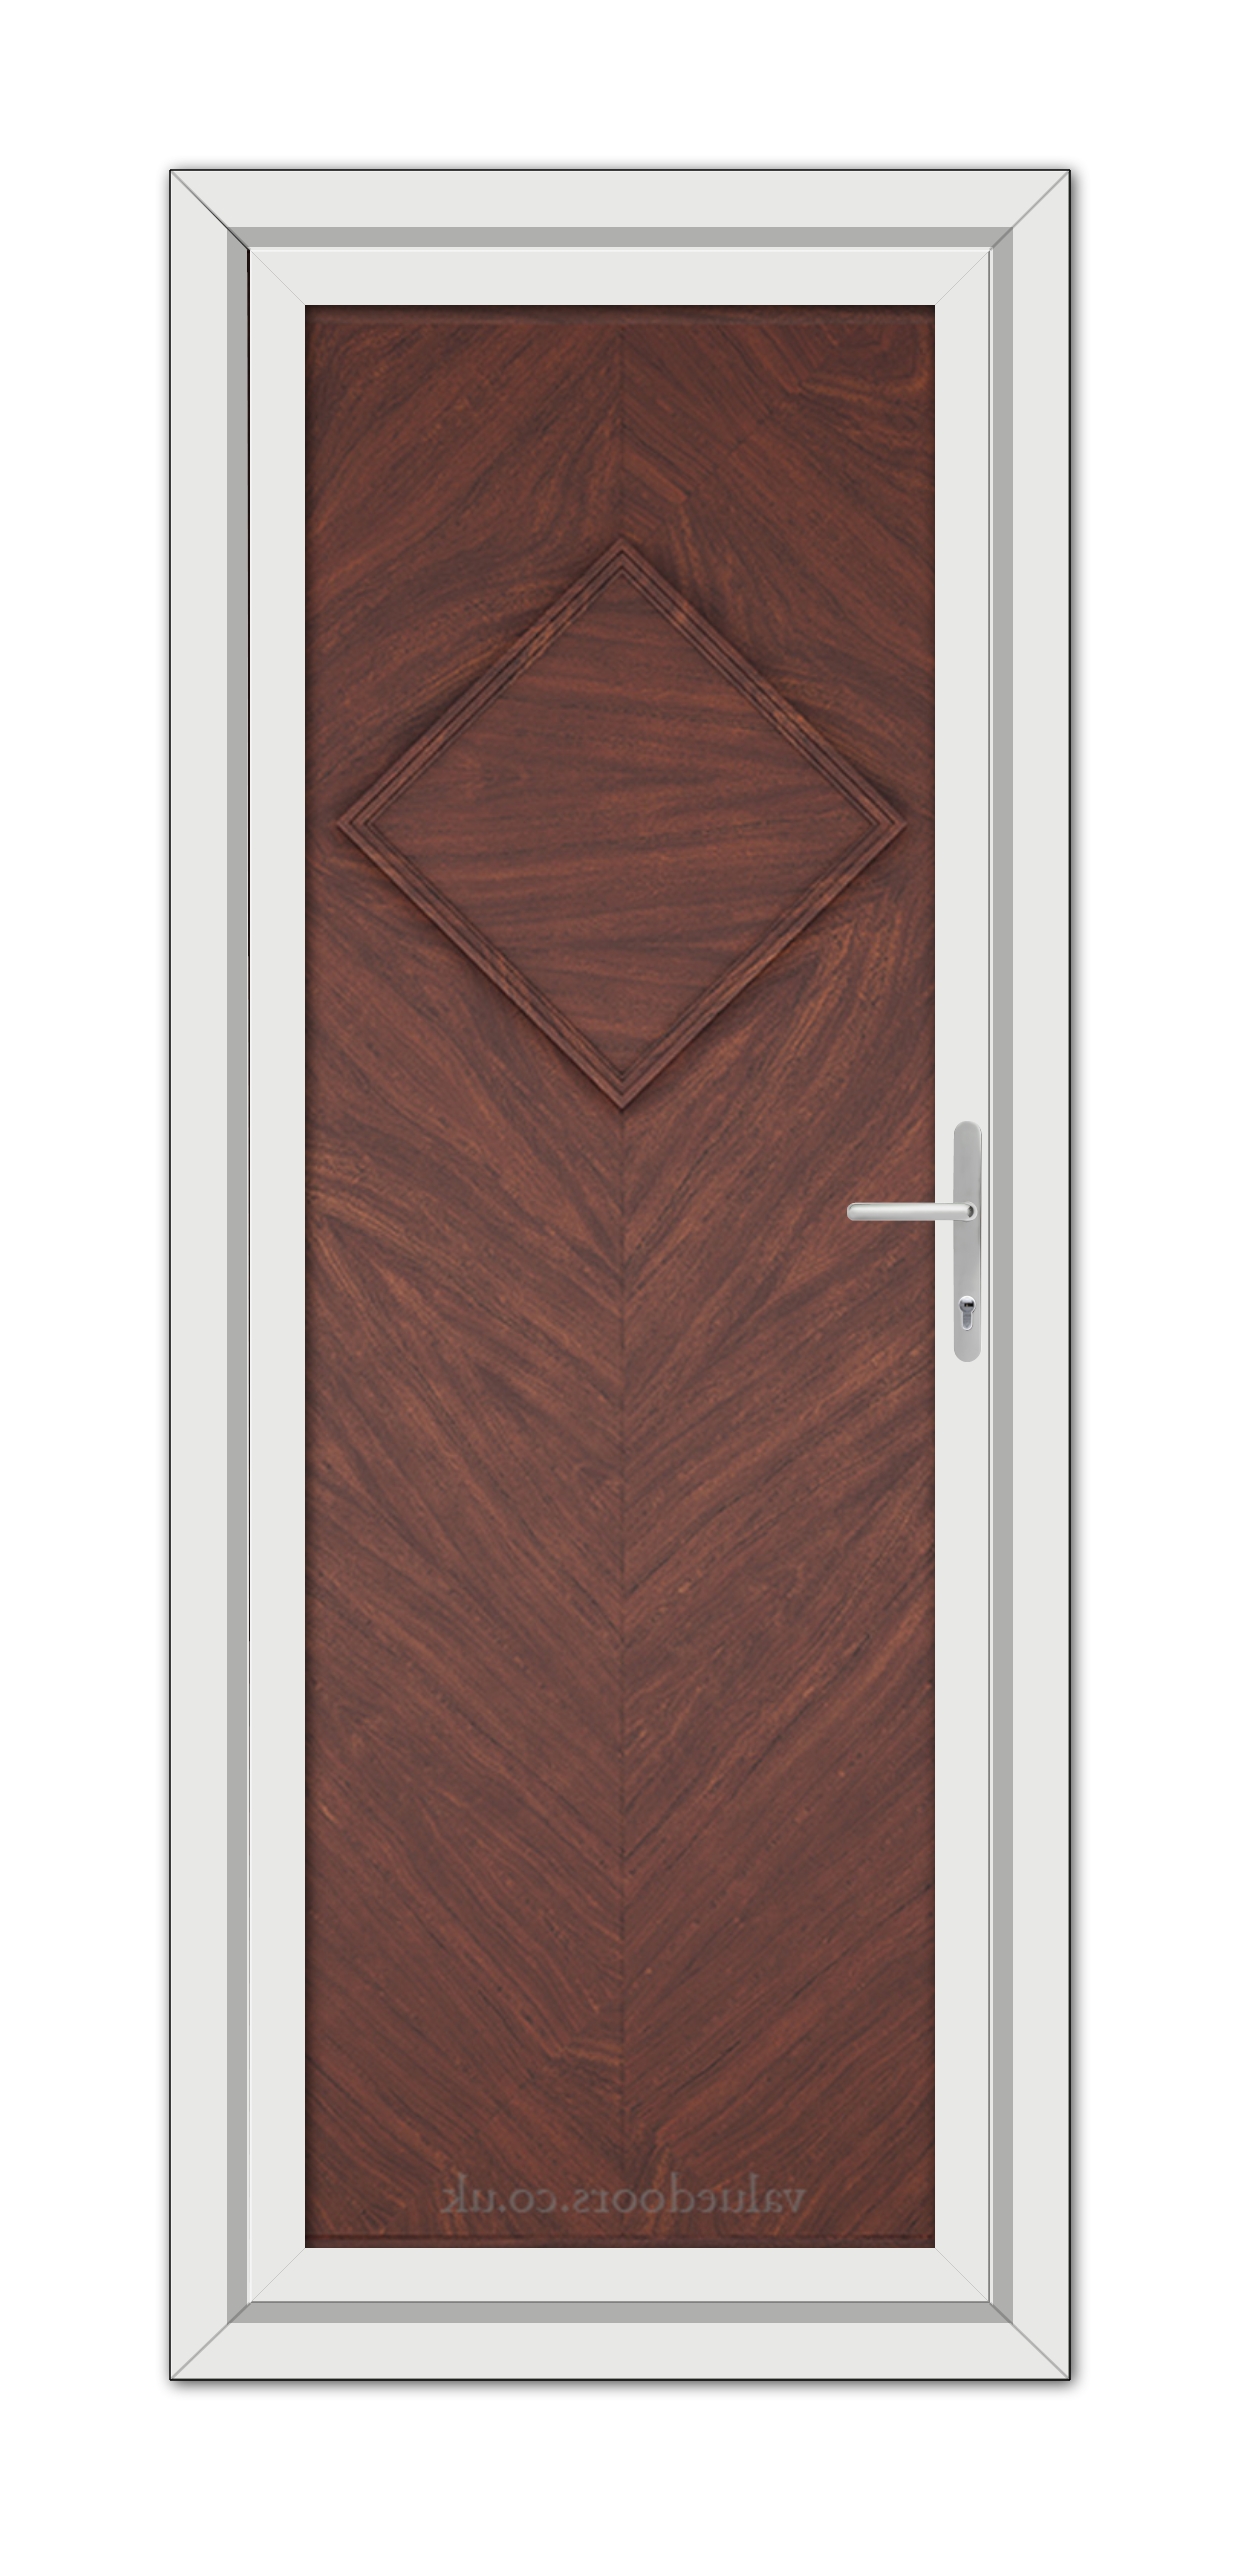 A close-up of a Rosewood Hamburg Solid uPVC Door.